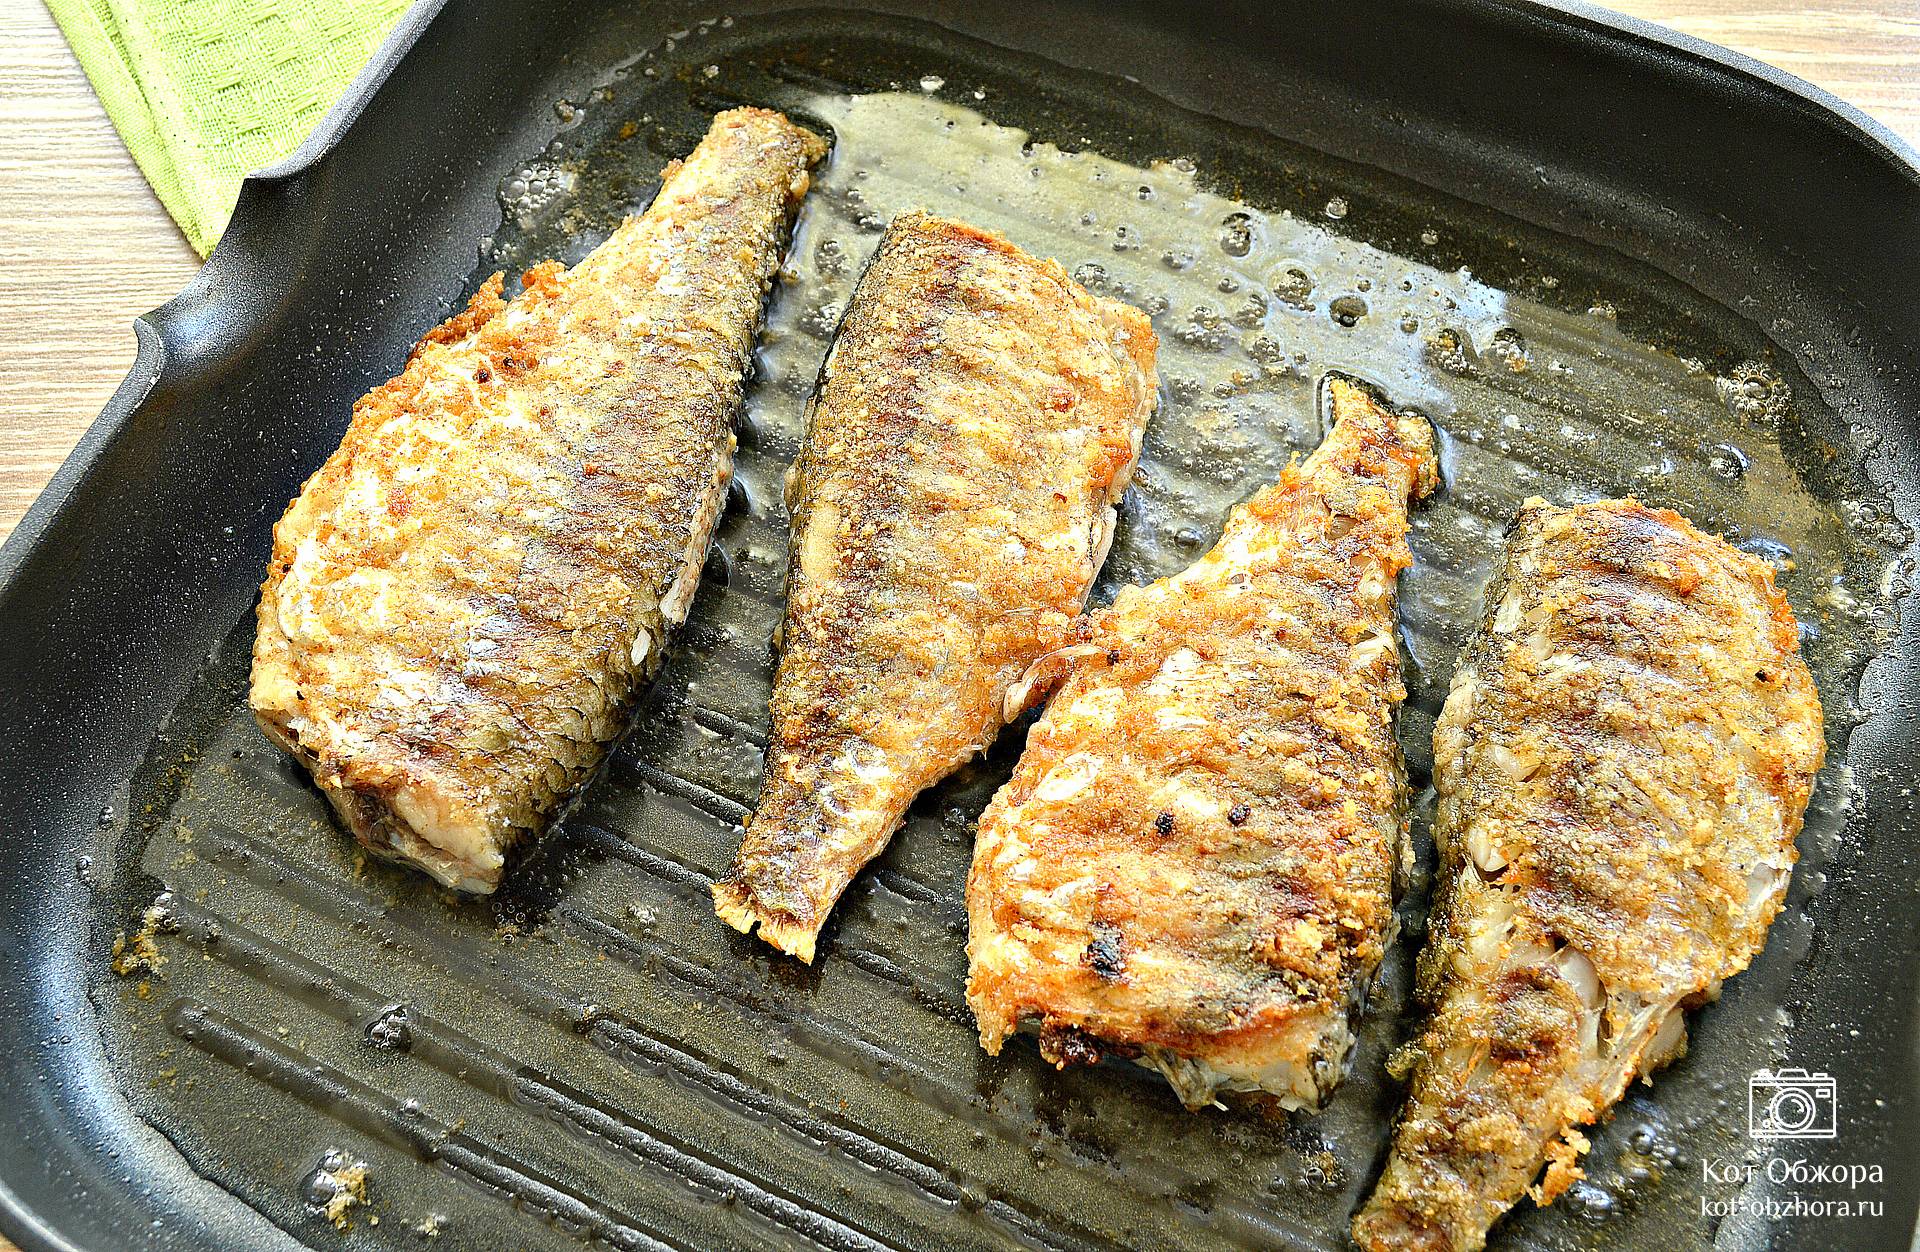 Тушеная рыба в сковороде - пошаговый рецепт с фото на конференц-зал-самара.рф